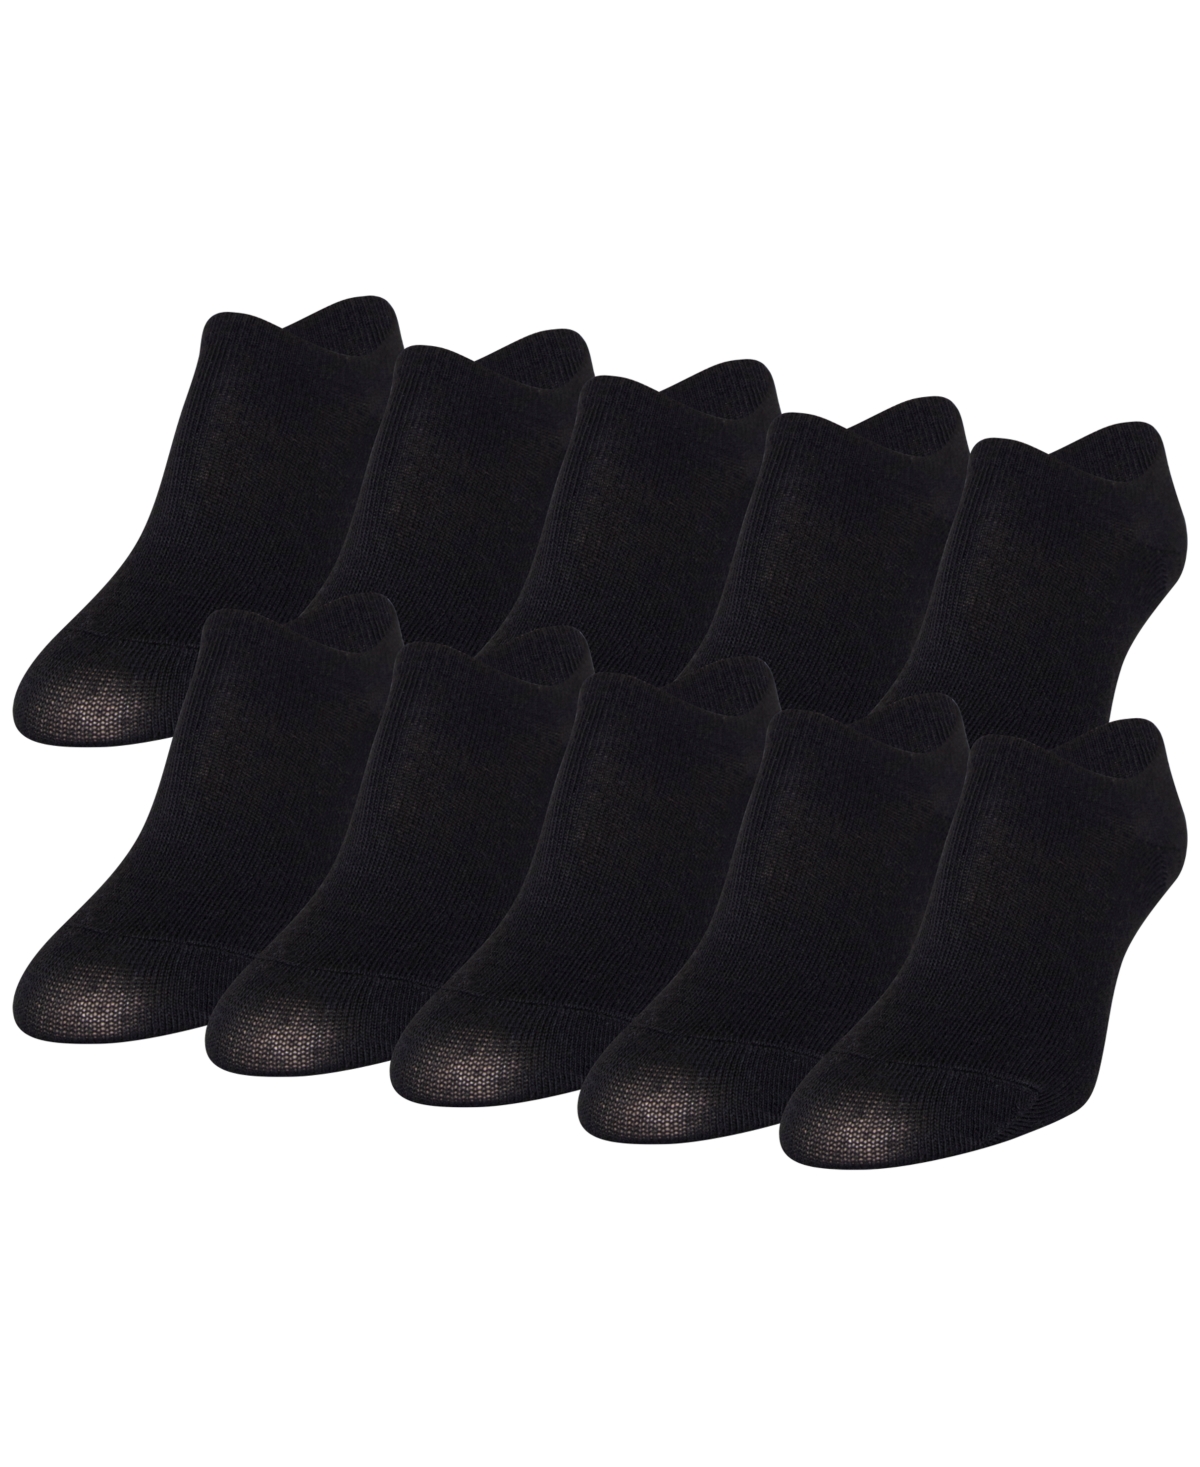 Women's 10-Pack Casual Triple-y Liner Socks - Black